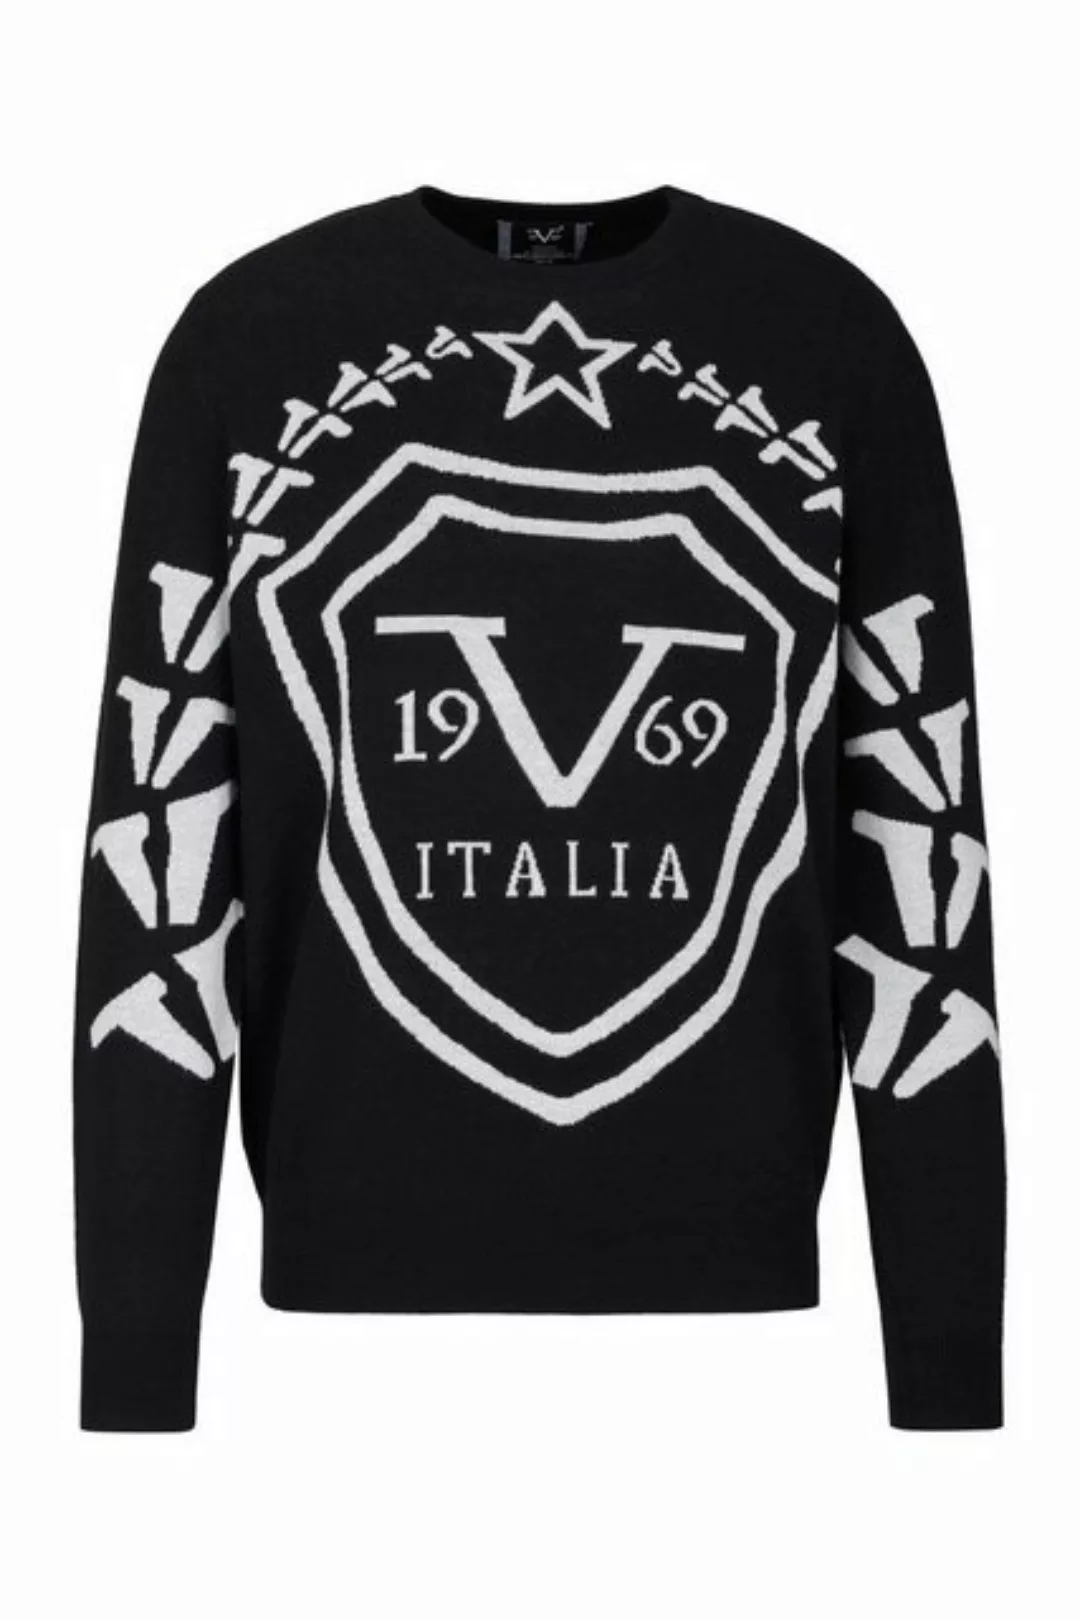 19V69 Italia by Versace Rundhalspullover by Versace Sportivo SRL - Enzo günstig online kaufen